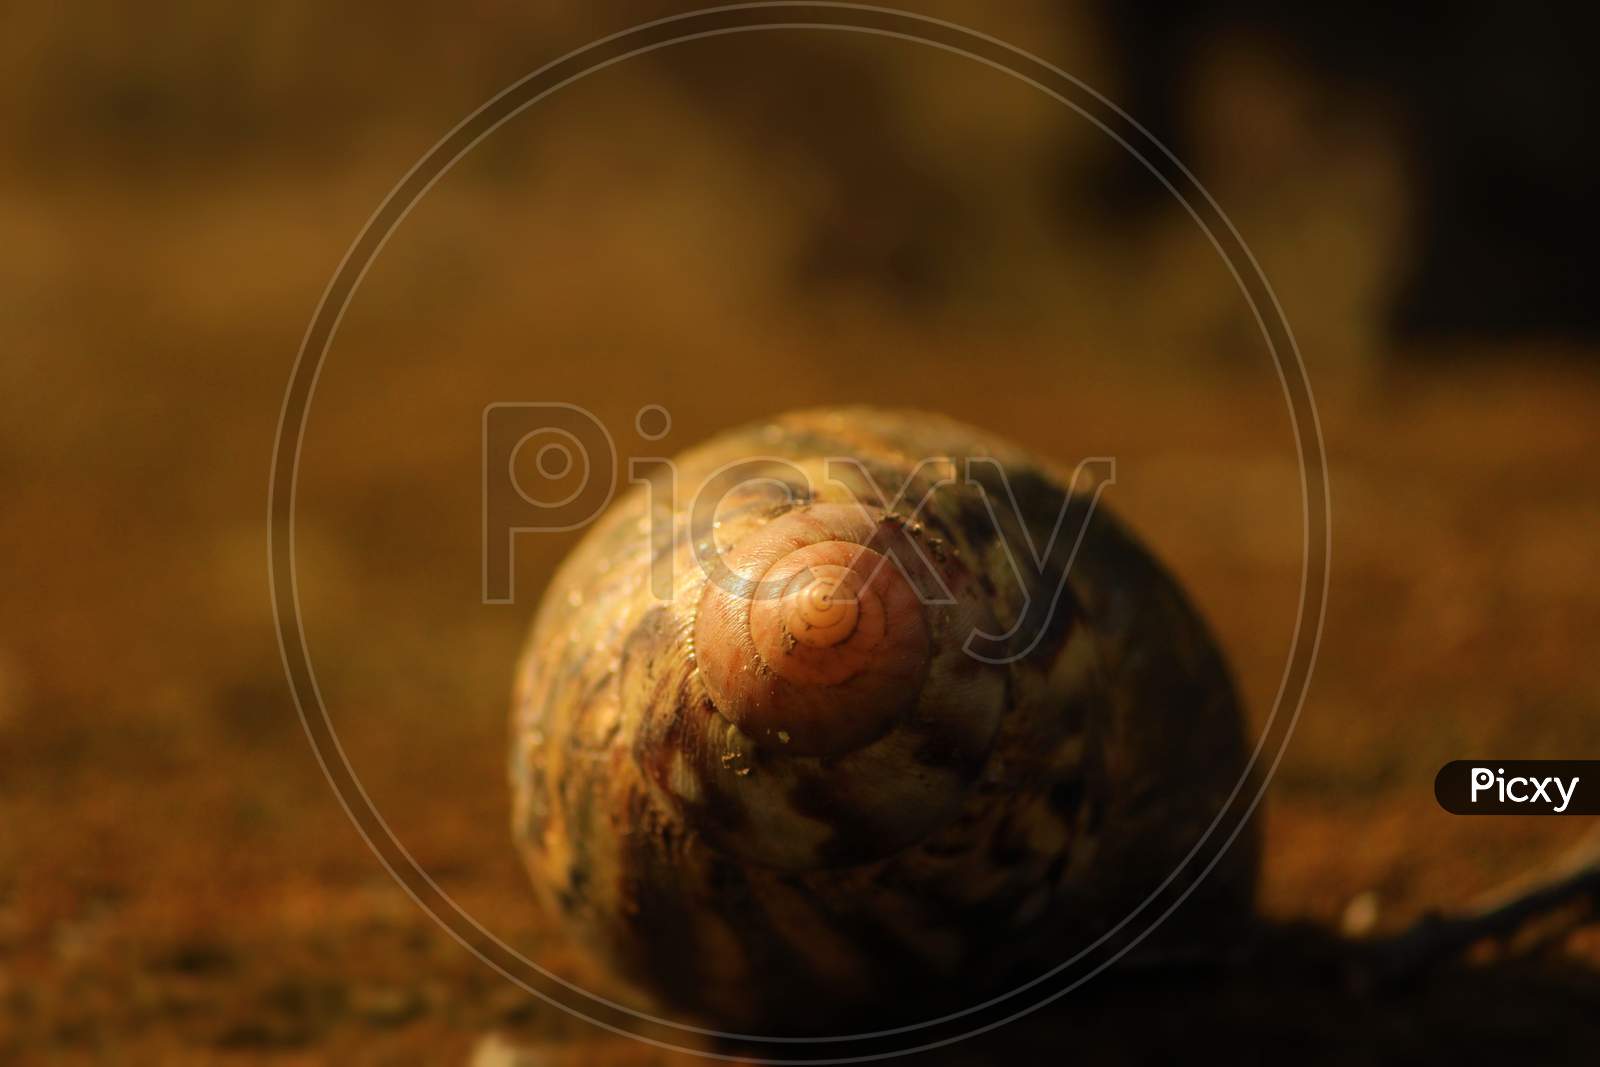 Snail shell